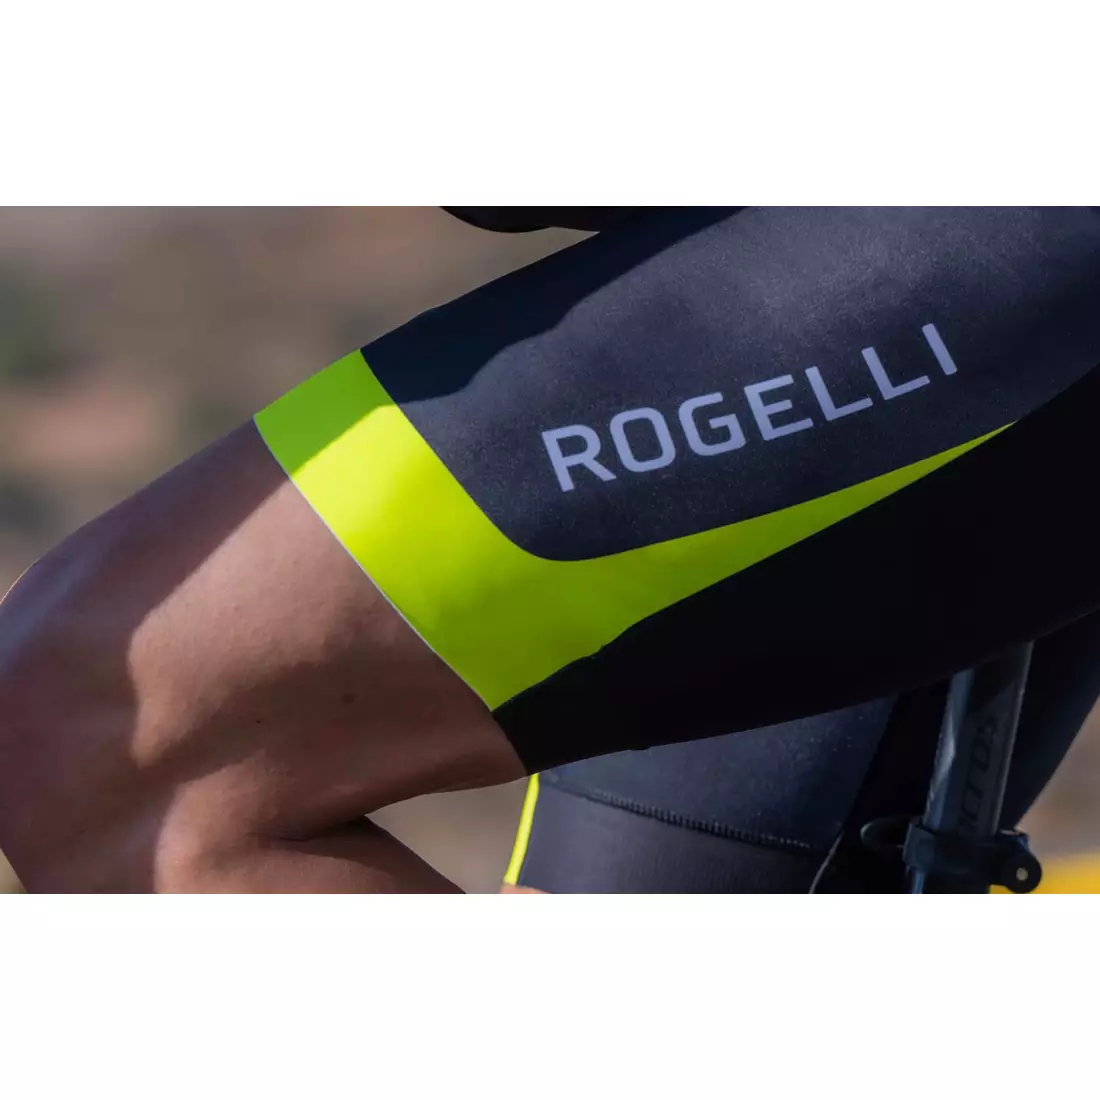 Rogelli FUSE II pánske cyklistické šortky, čierna a žltá